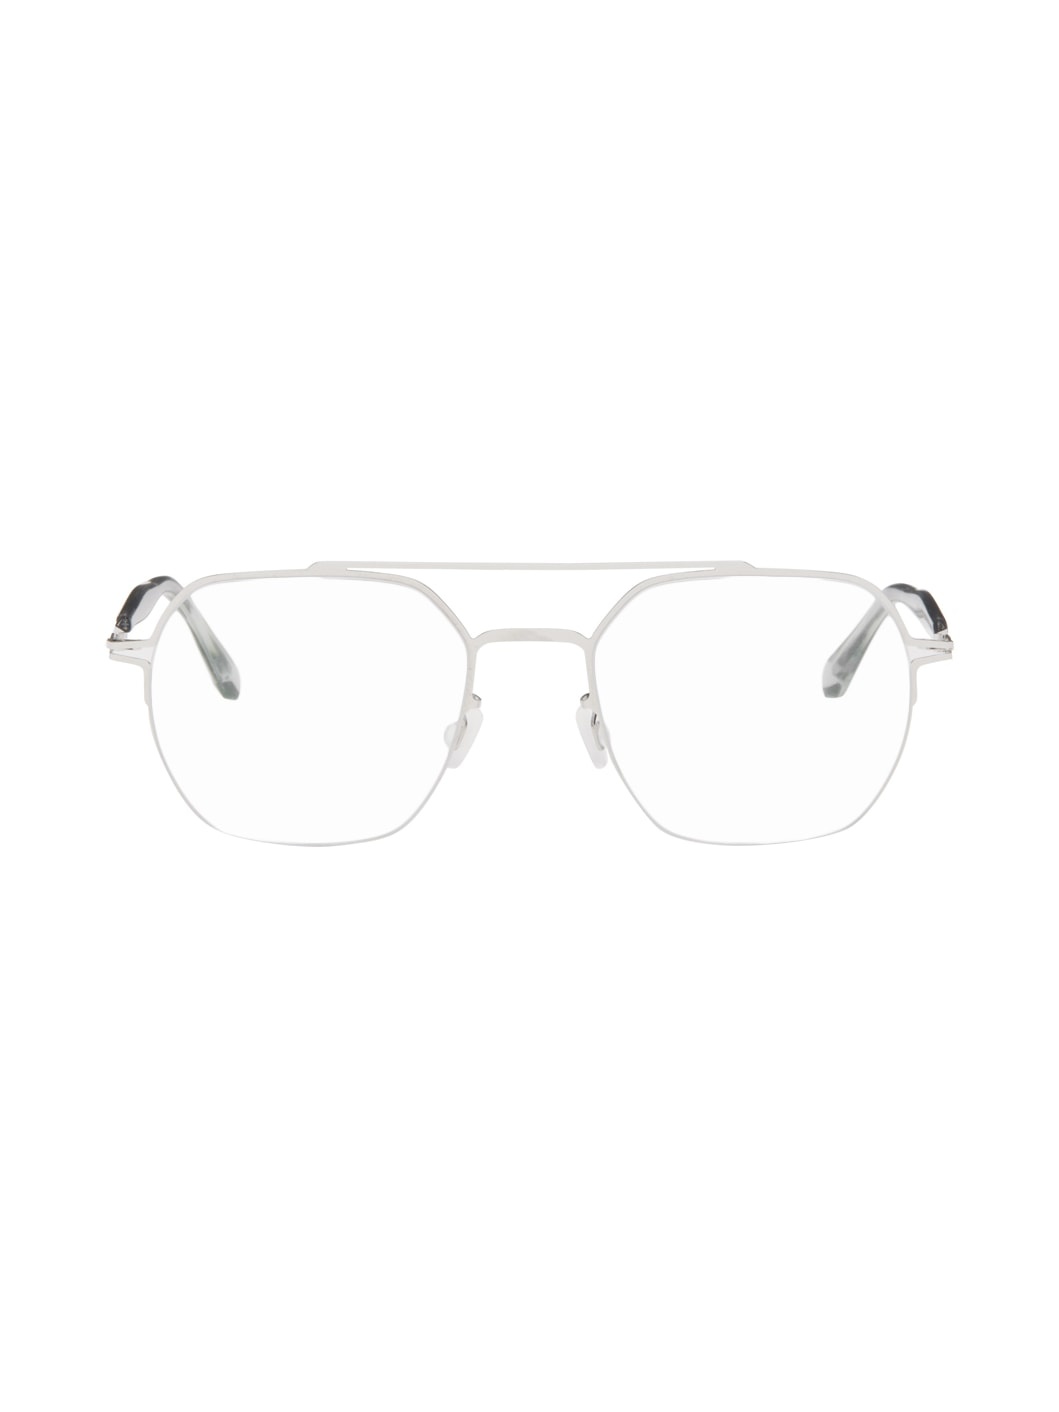 Silver Arlo Glasses - 1